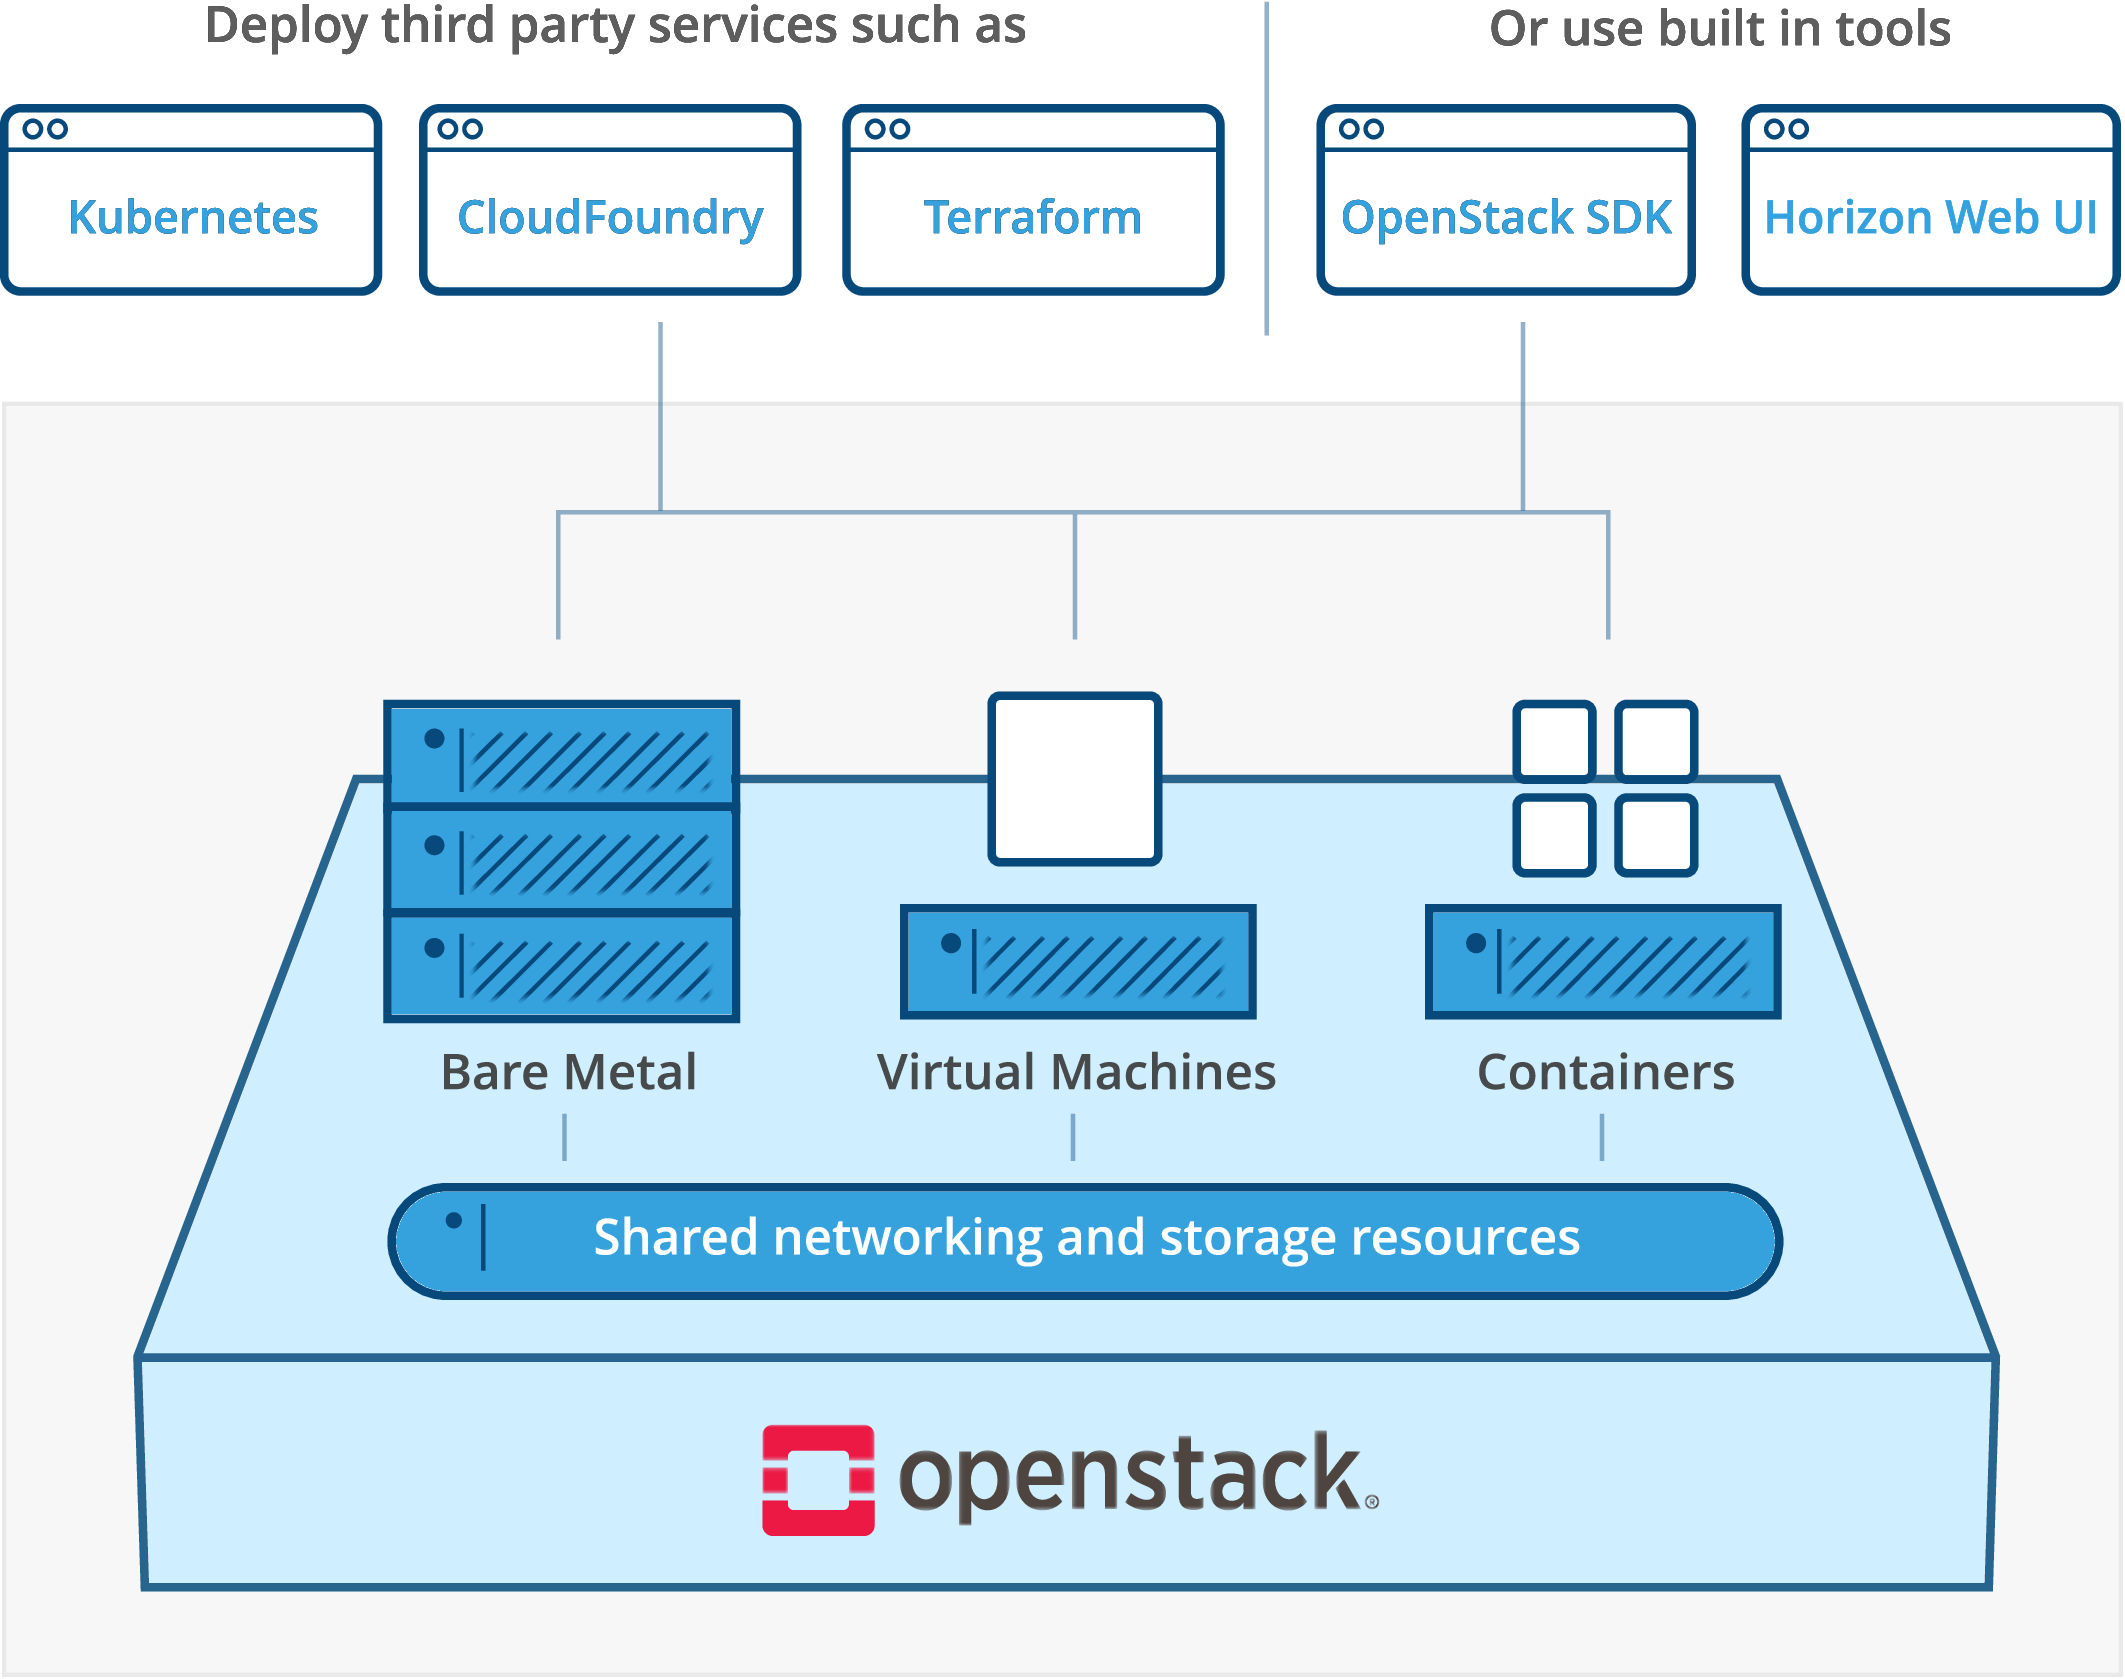 Openstack Знакомство С Облачной Операционной Системой Pdf